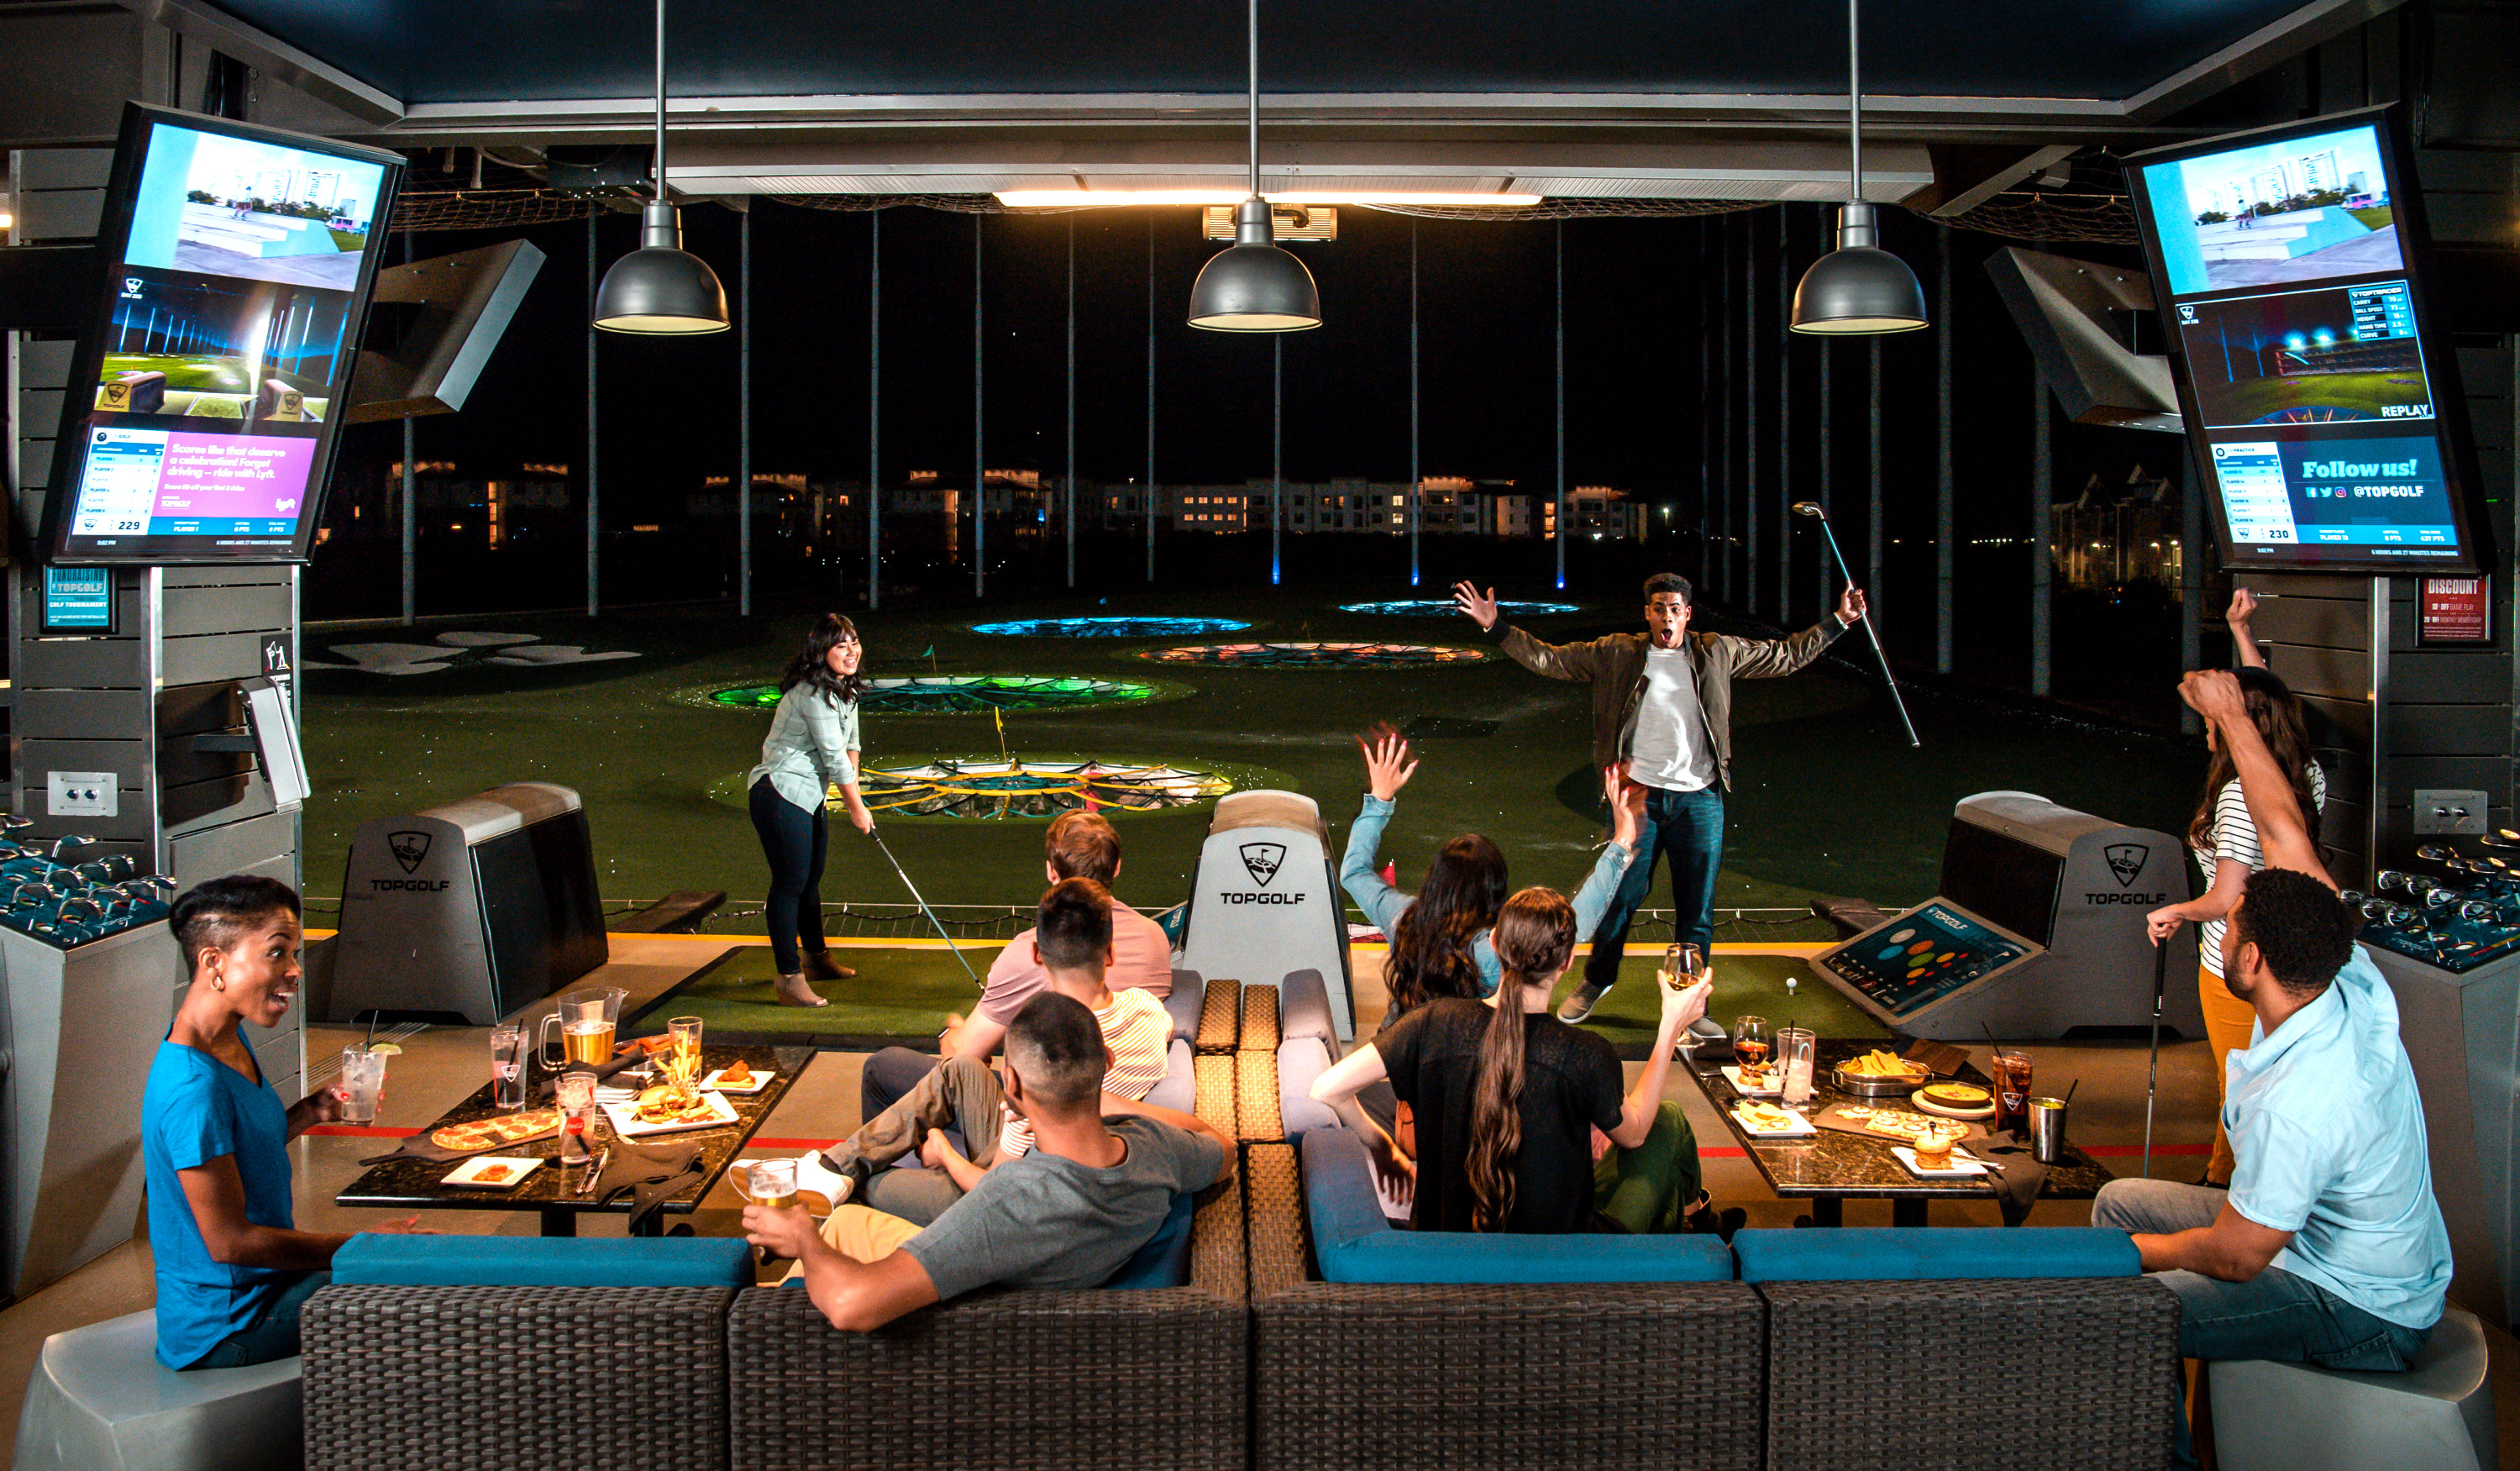 美 복합문화공간 '탑골프'를 찾은 고객들이 LG 디지털 사이니지가 설치된 공간에서 골프, 모임 등을 즐기고 있다.